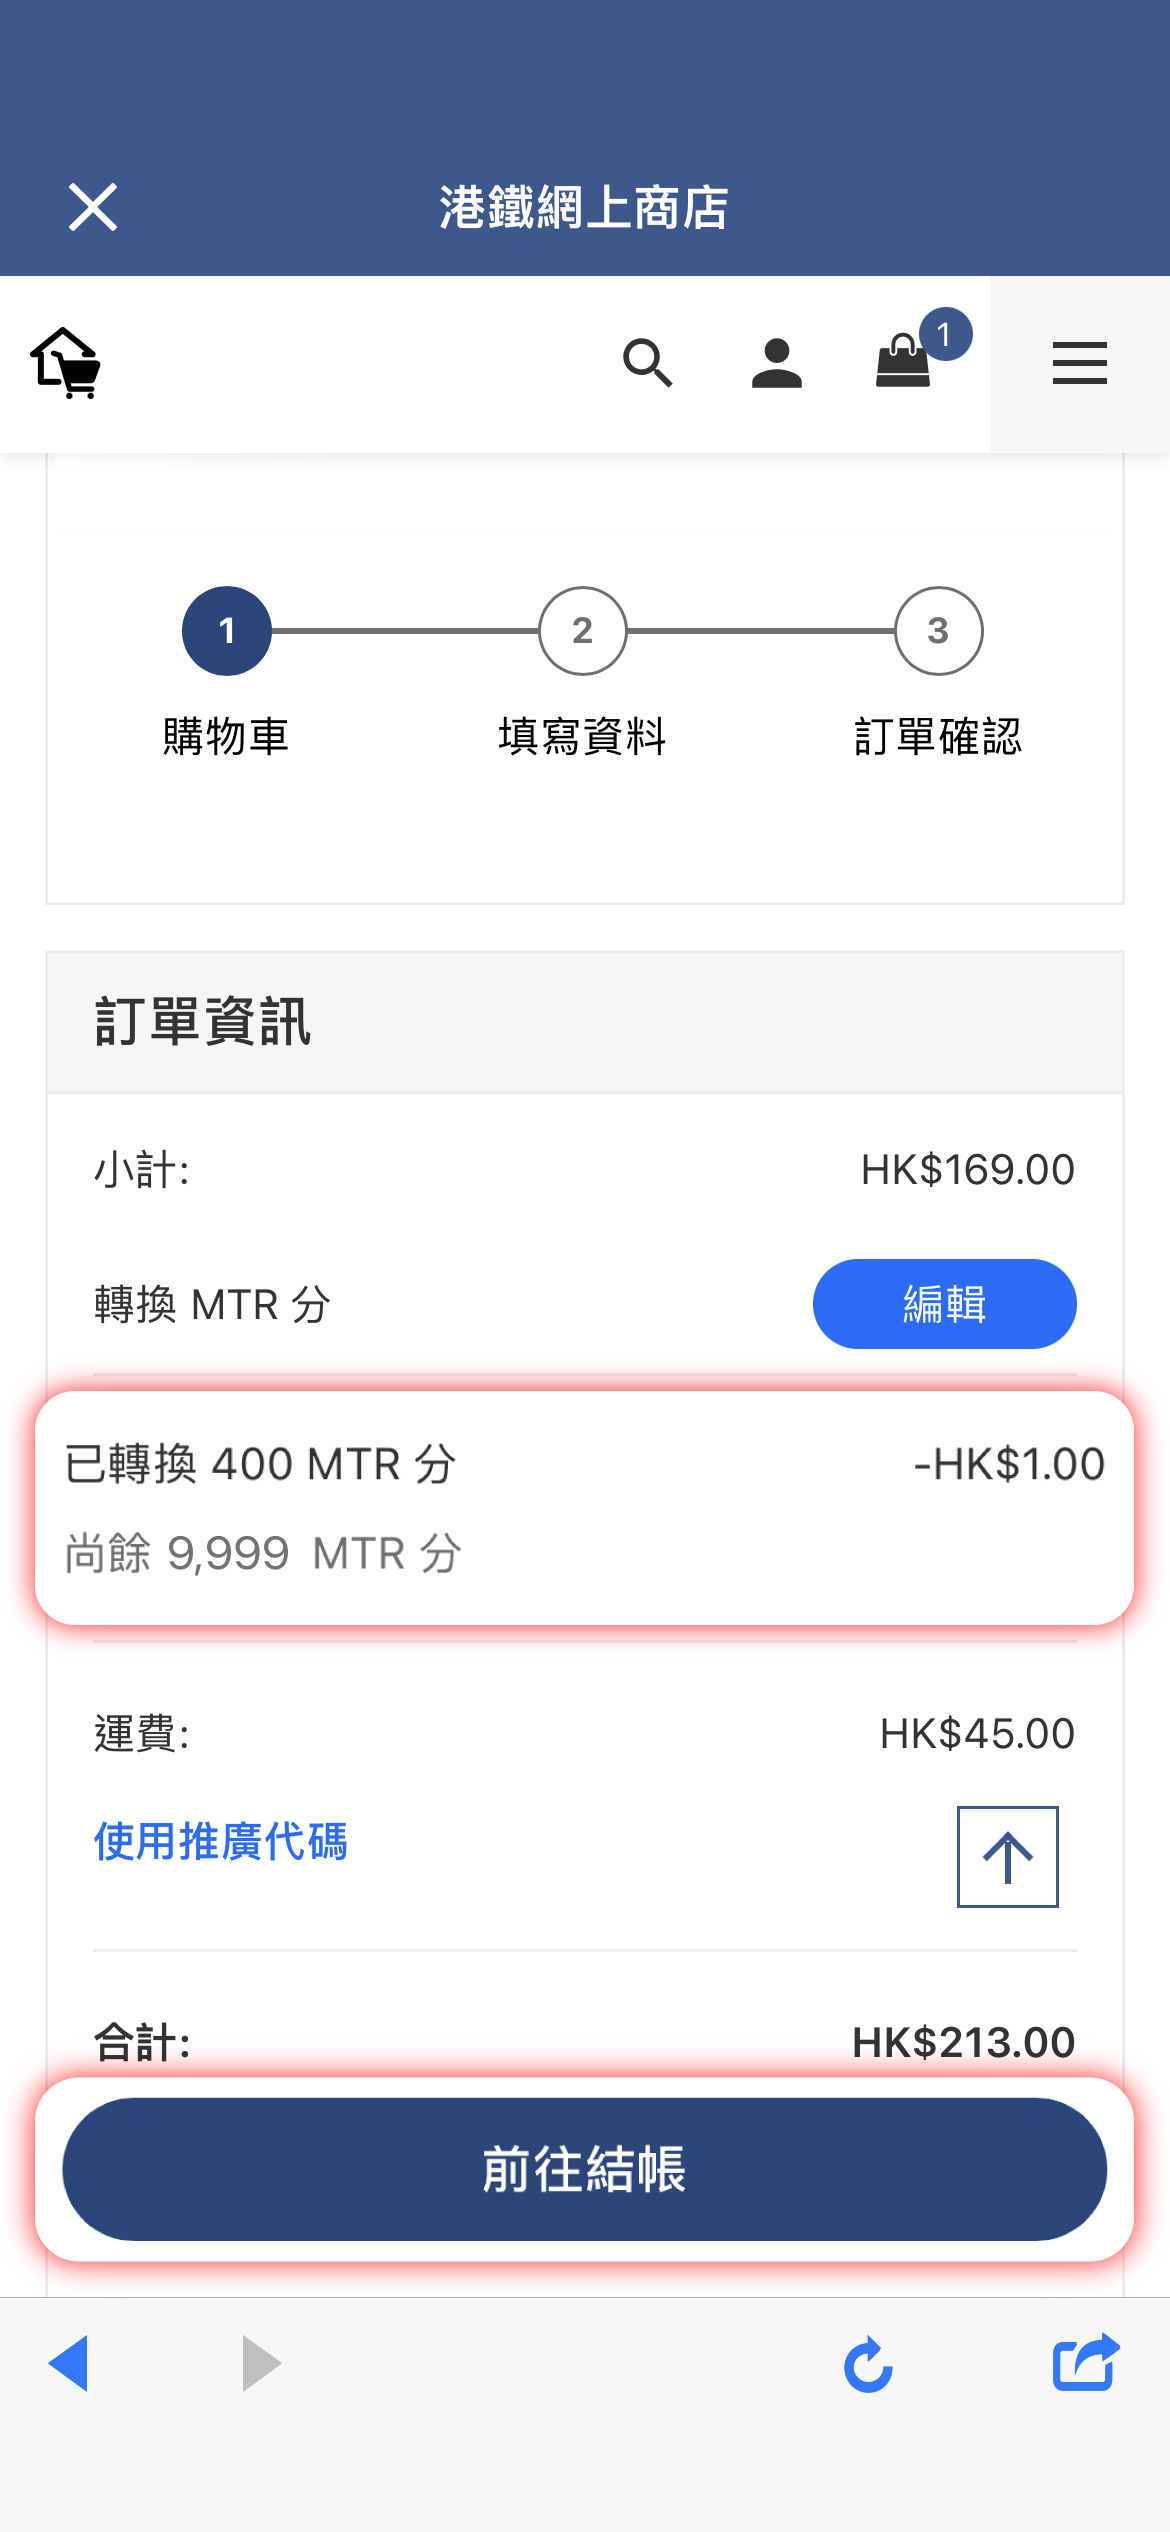 實際支付金額將扣減兌換MTR 分後更新，按 「前往結賬」完成付款